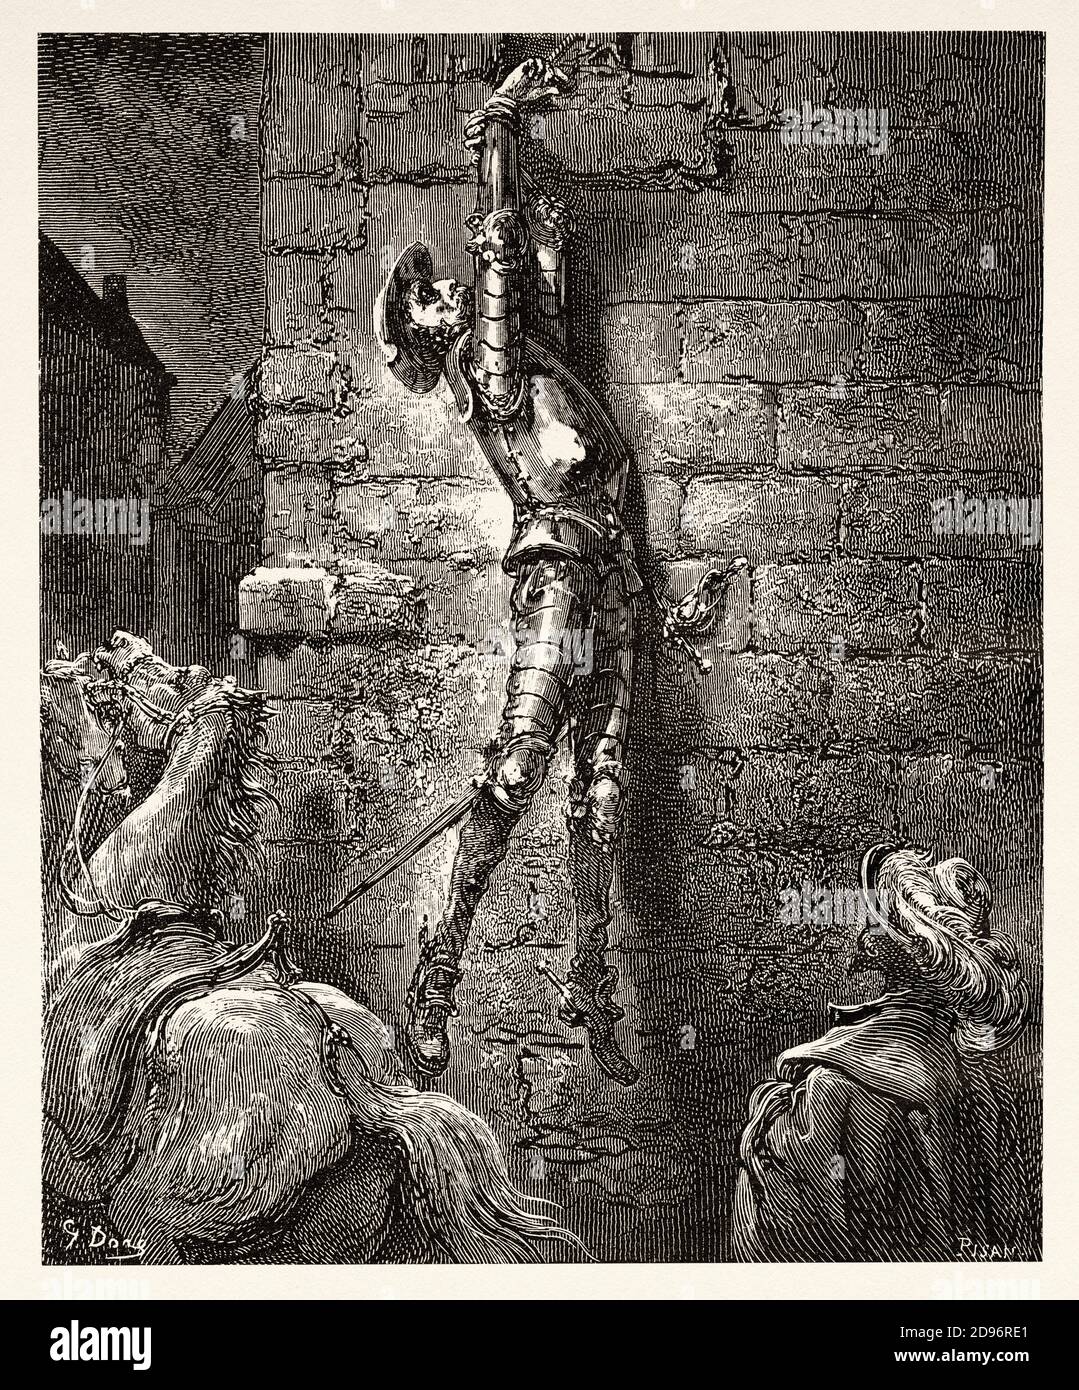 Don Chisciotte, era inevitabilmente caduto a terra. Don Chisciotte di Miguel de Cervantes Saavedra. Antica illustrazione dell'incisione del XIX secolo di Gustave Dore Foto Stock